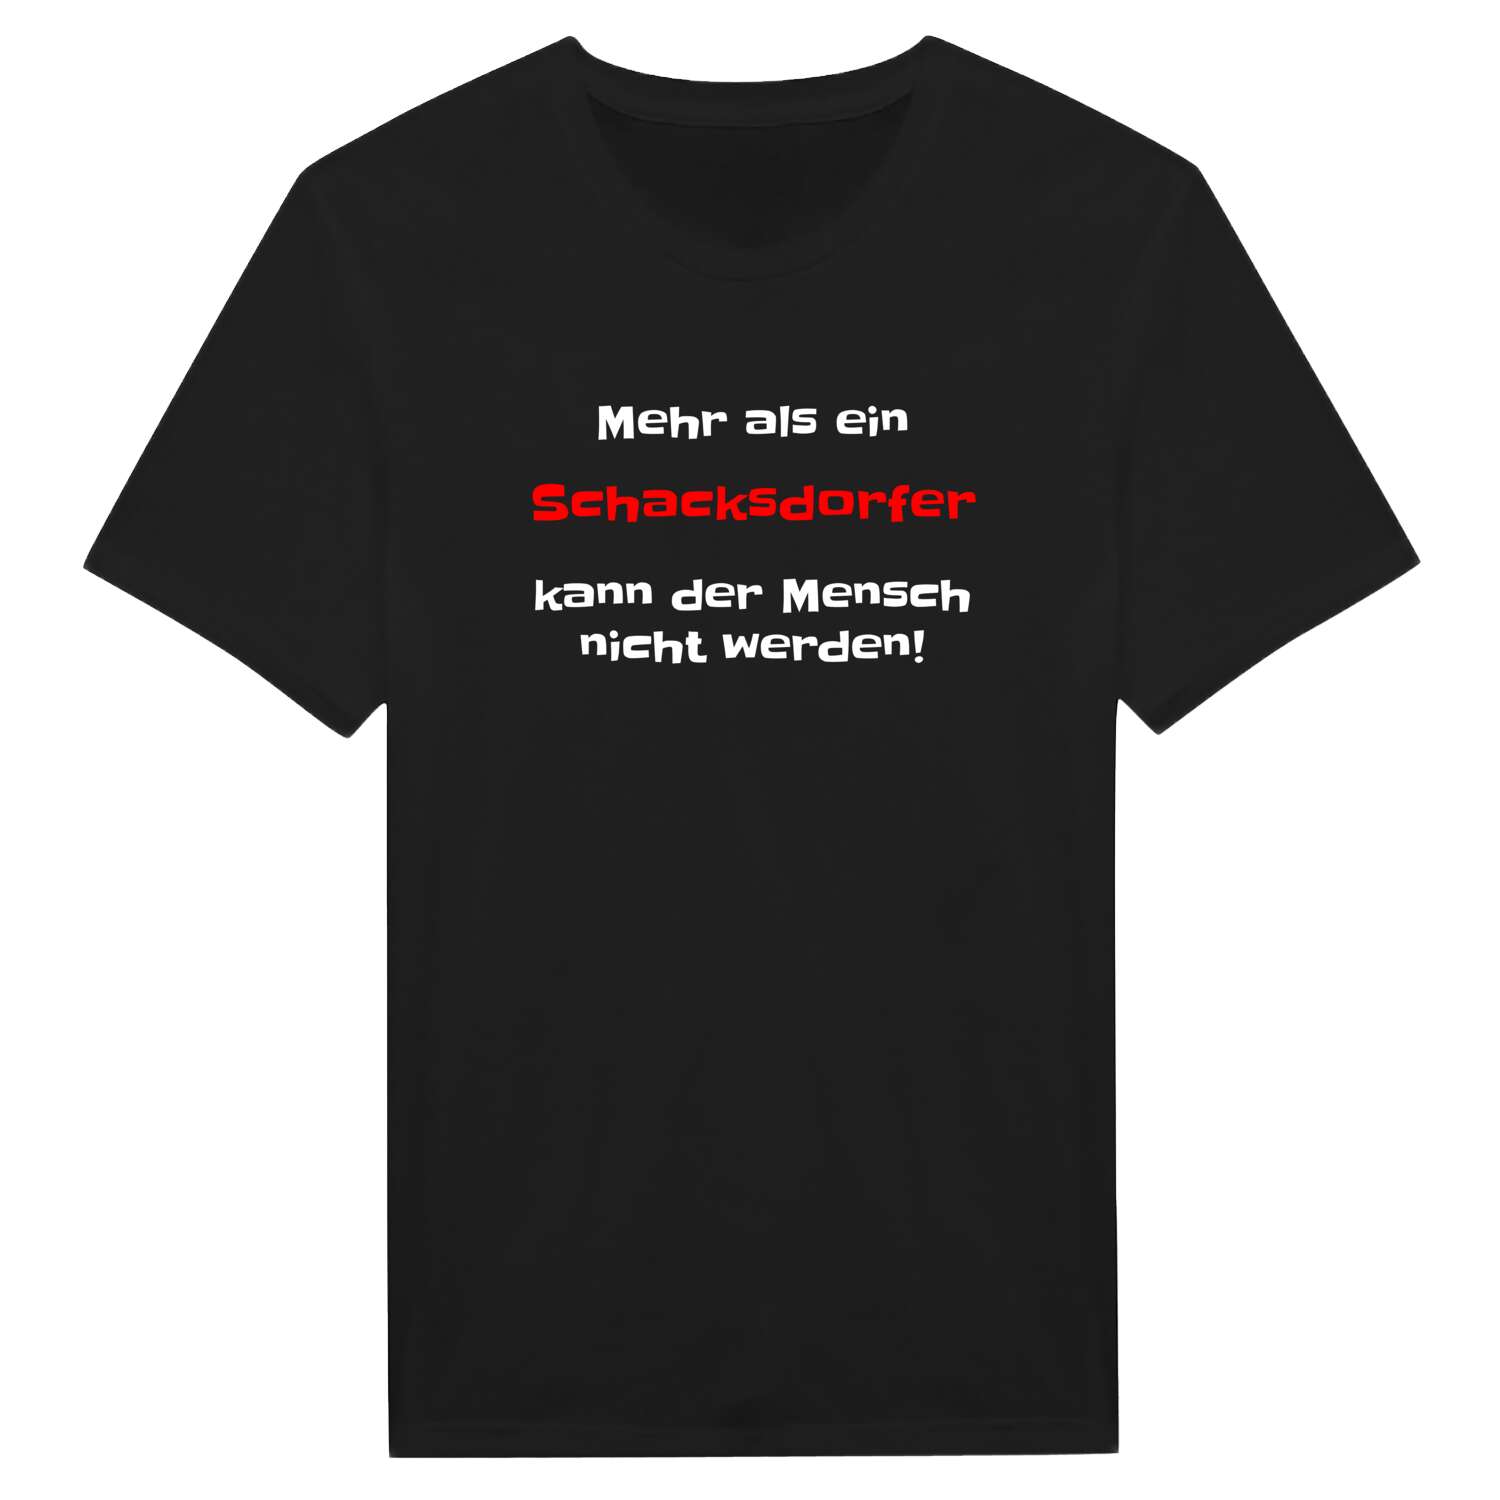 Schacksdorf T-Shirt »Mehr als ein«